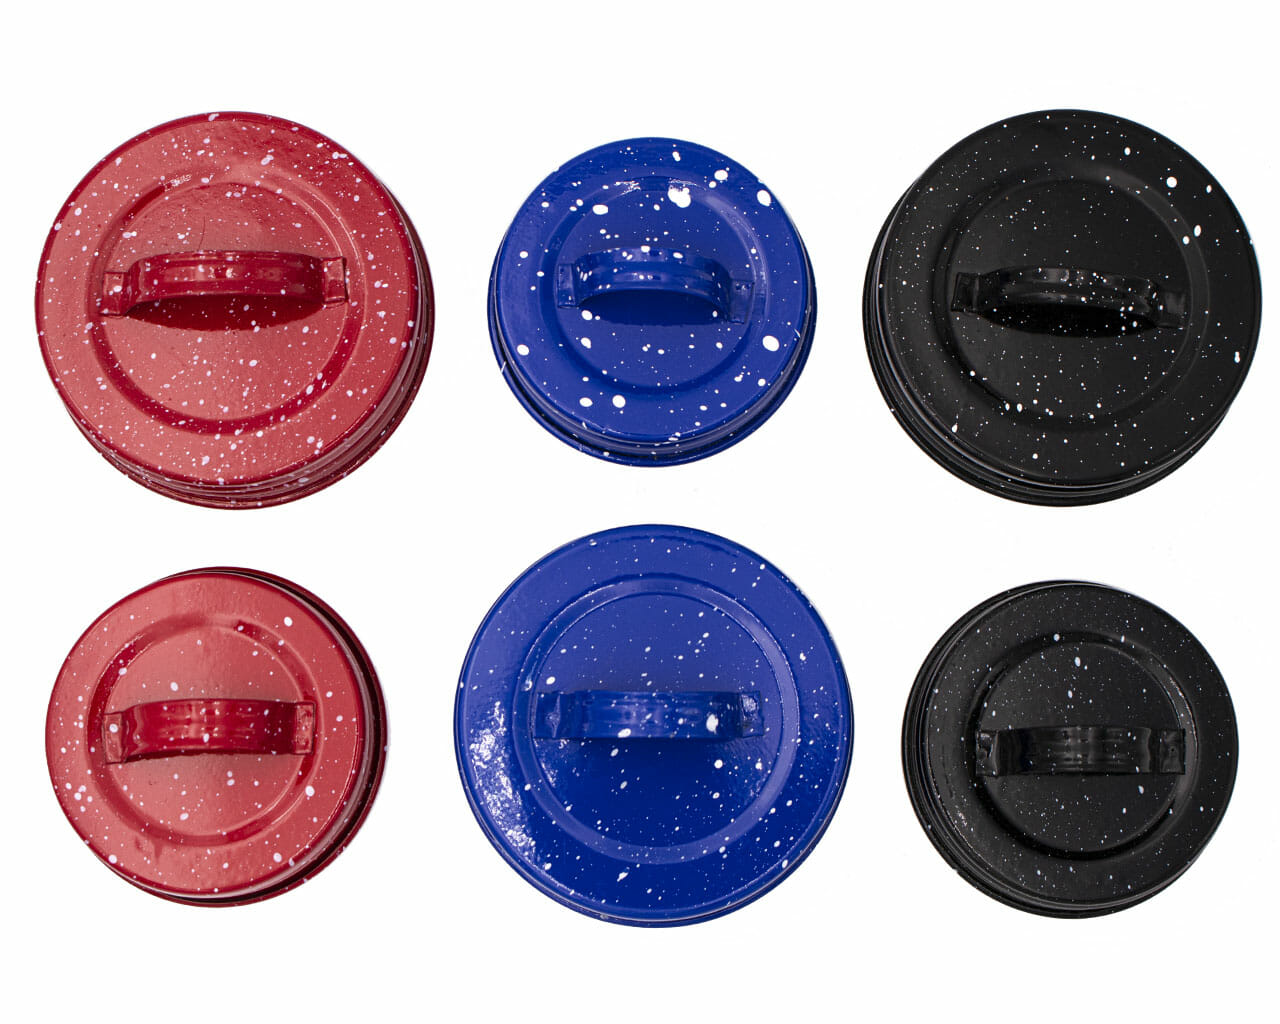 https://masonjarlifestyle.com/cdn/shop/files/mason-jar-lifestyle-regular-wide-mouth-decorative-speckled-enamel-handle-canister-lid-red-blue-black.jpg?v=1695767583&width=1400